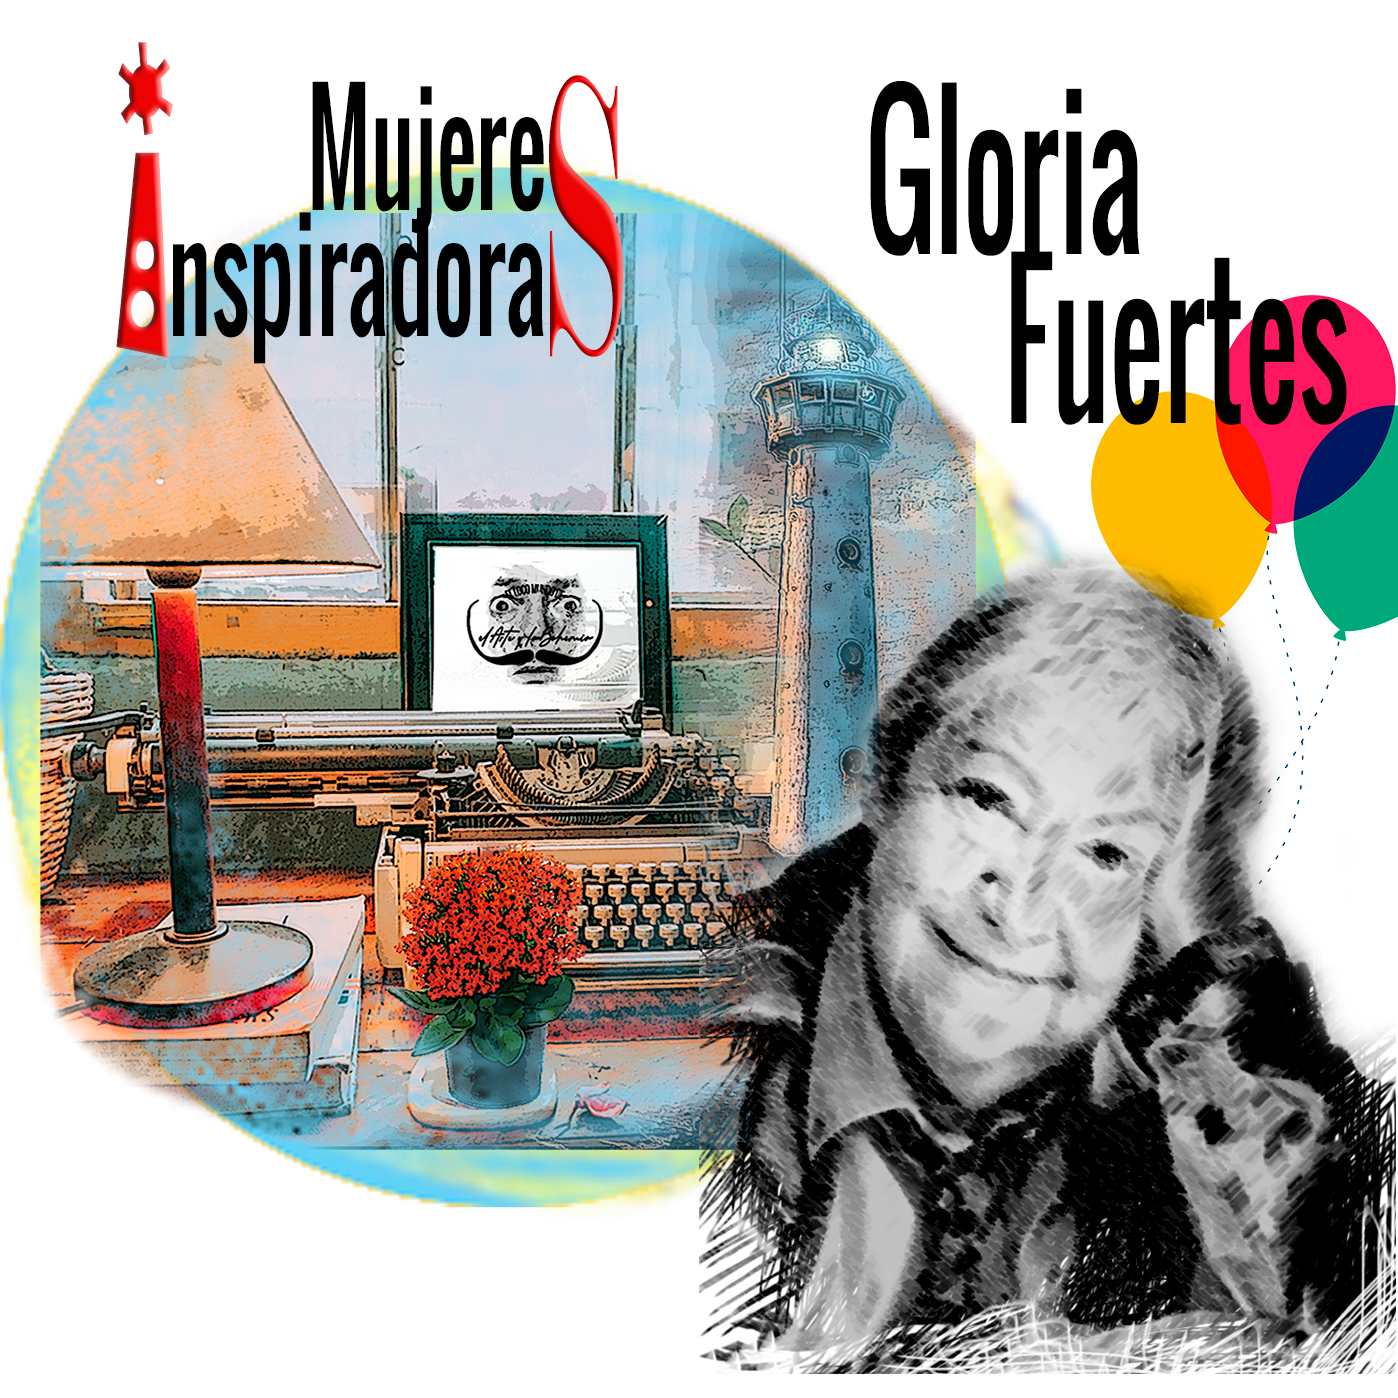 Mujeres Inspiradoras: Gloria Fuertes con fondo collage con máquina escribir y un faro coloreados. Loco Mundo Arte y Bohemia